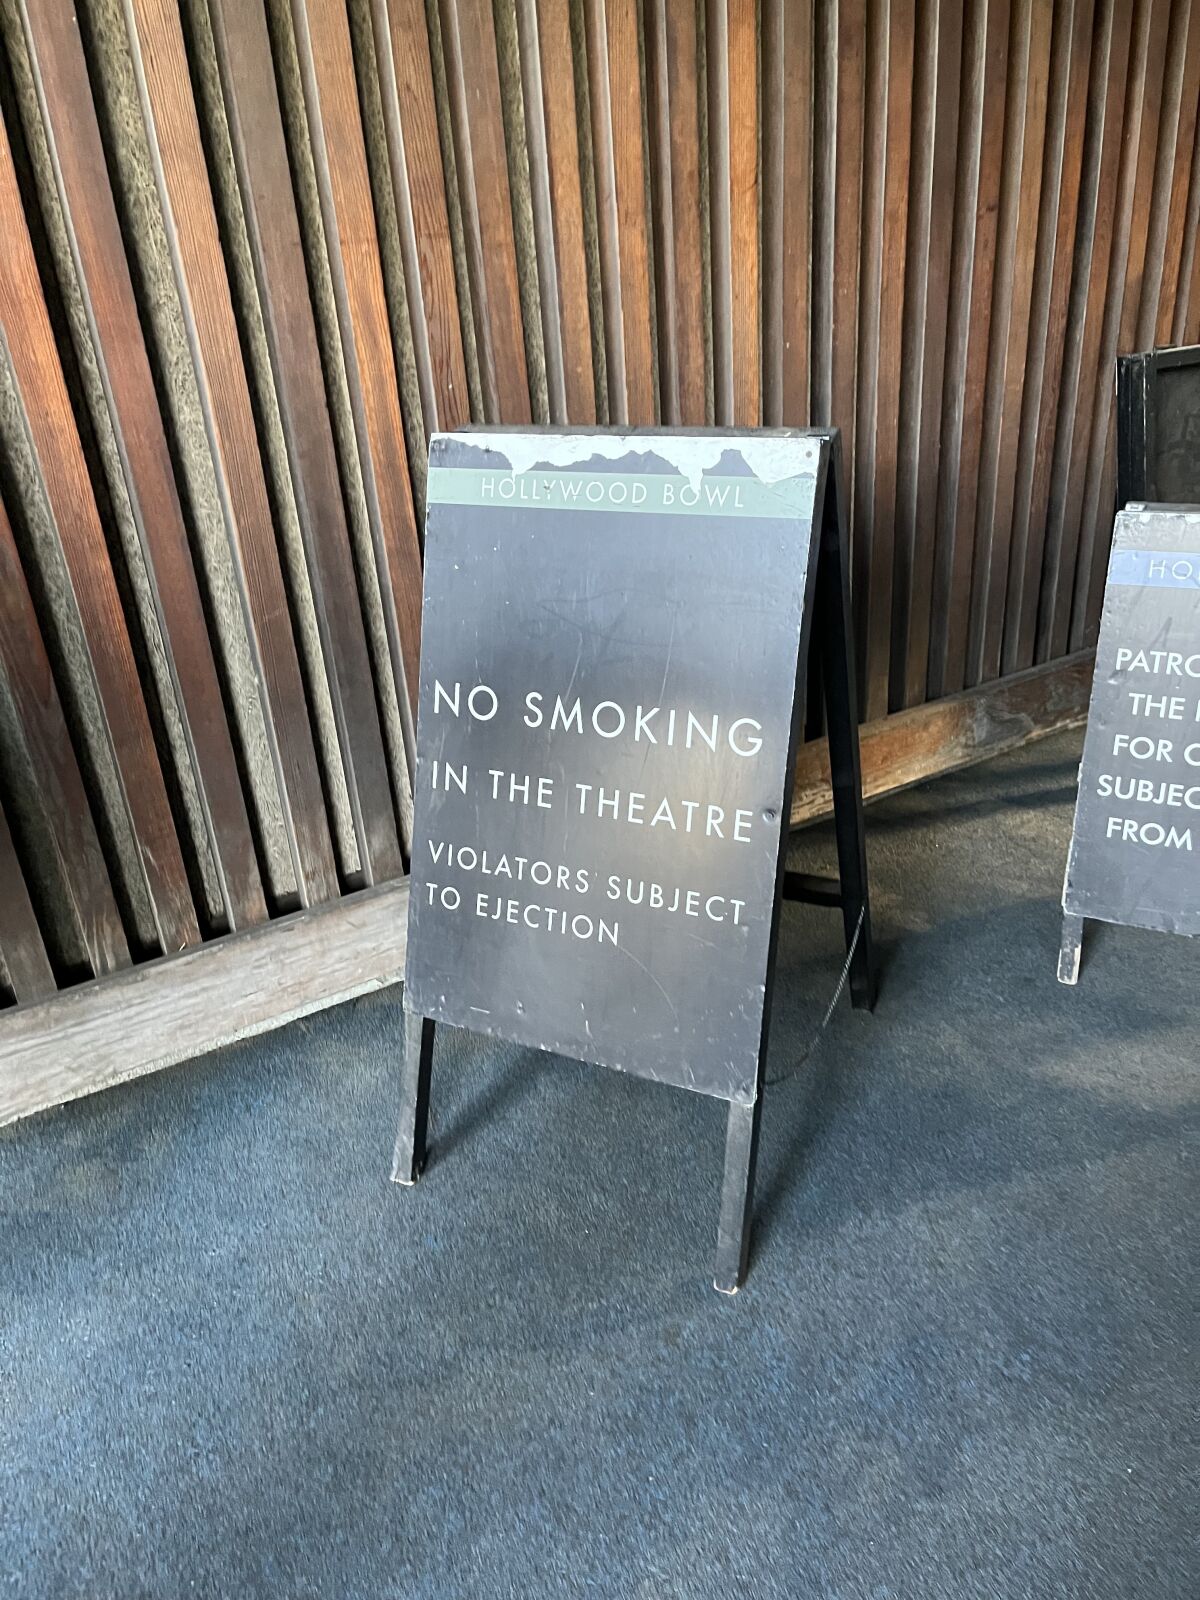 A no smoking sign at the Hollywood Bowl.